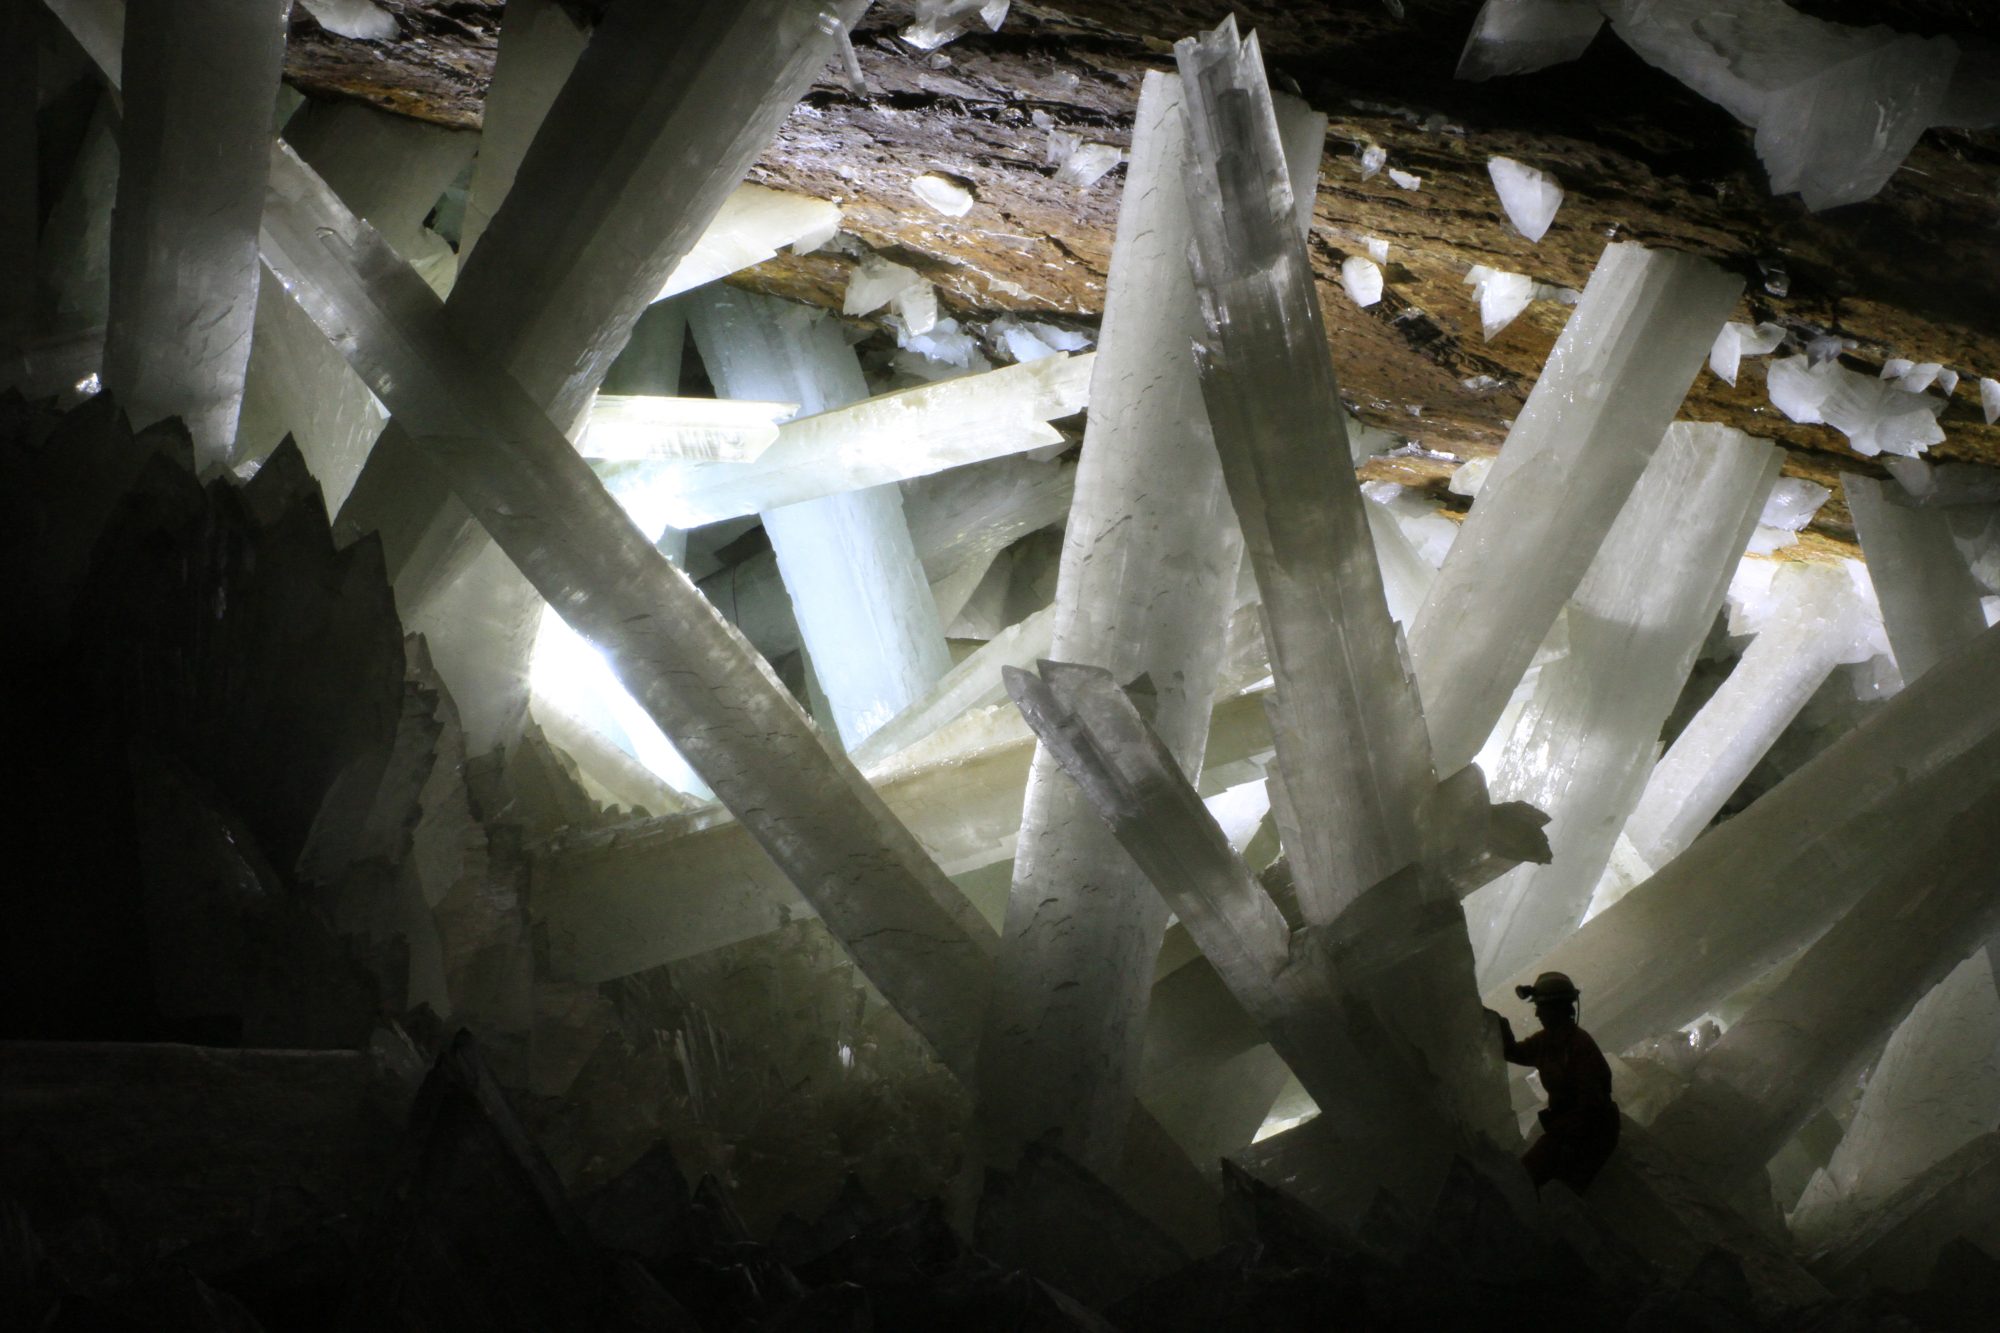 Cueva de los cristales, Naica, Chihuahua, Mexico